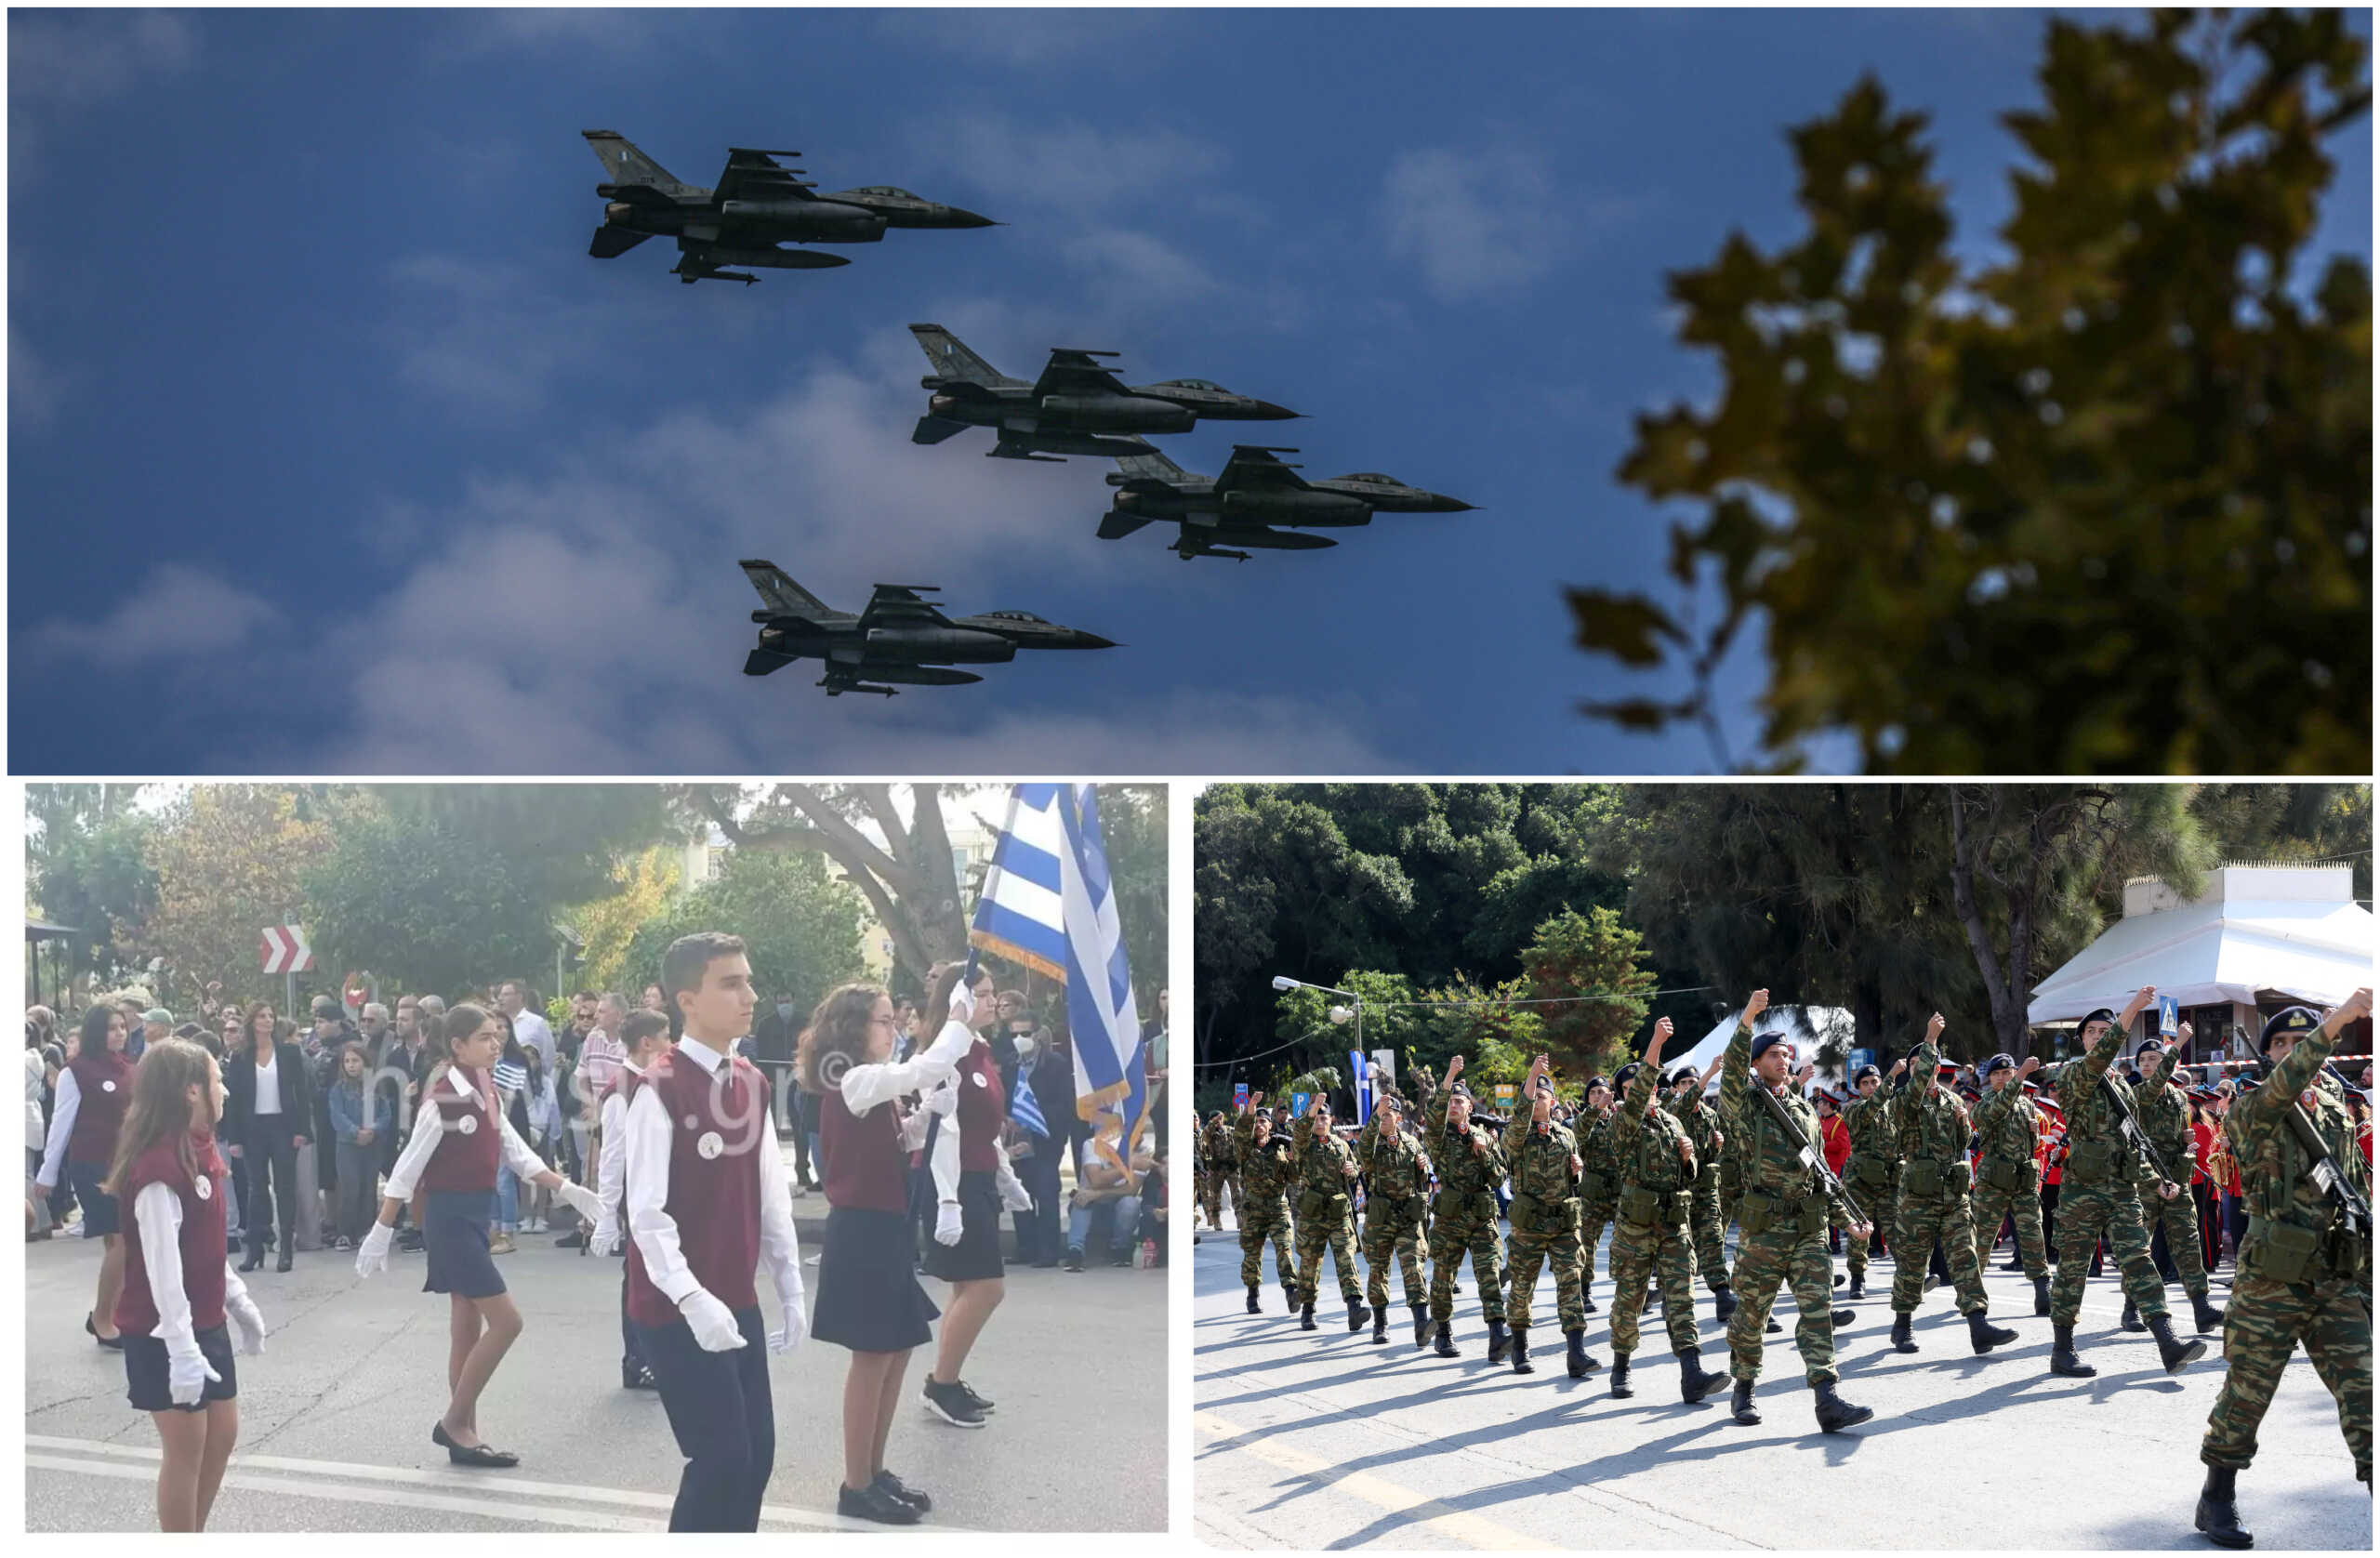 28η Οκτωβρίου: Υπερηφάνεια και συγκίνηση στις στρατιωτικές και μαθητικές παρελάσεις σε όλη την Ελλάδα